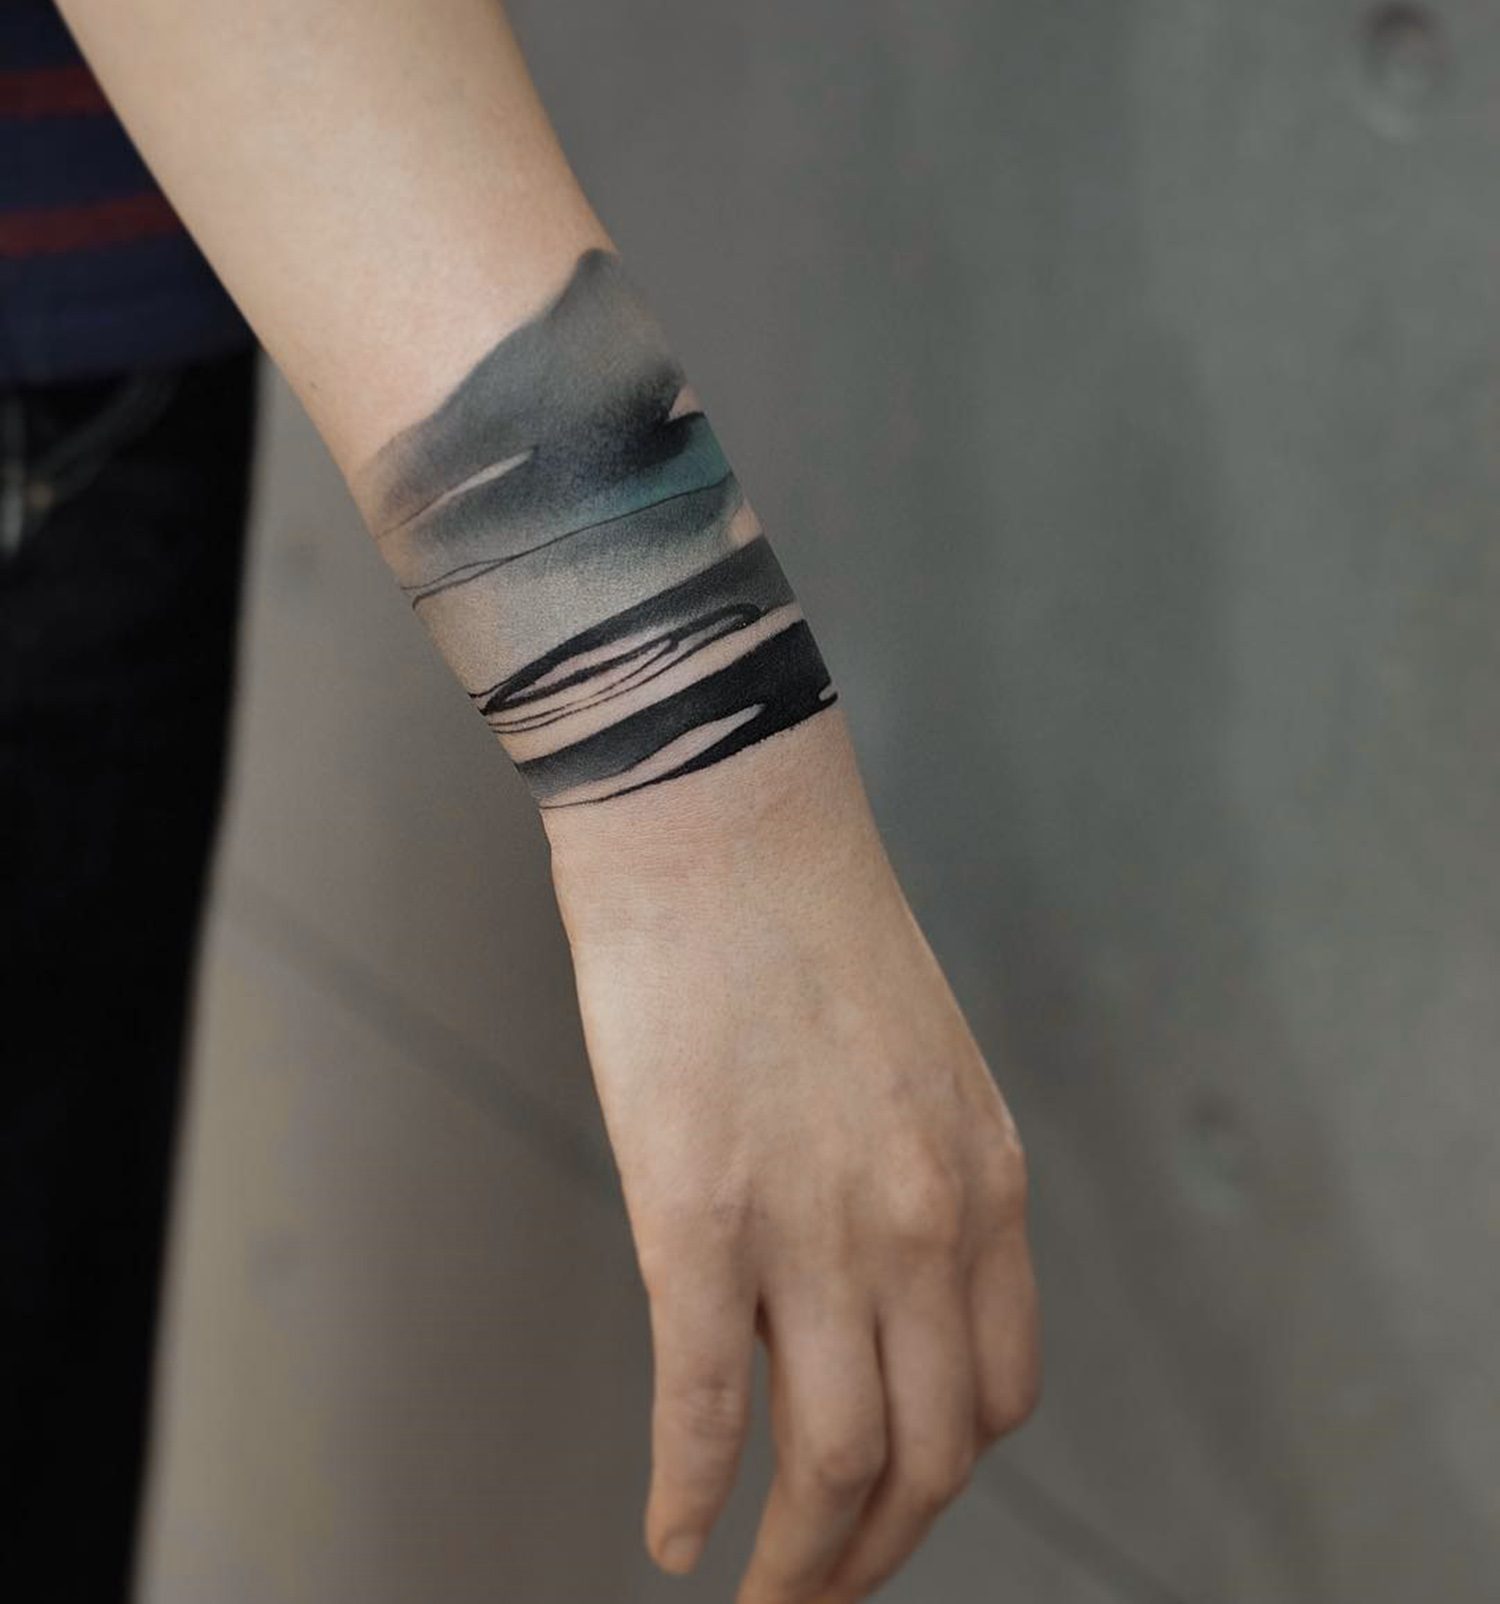 painterly tattoo on wrist, beautiful